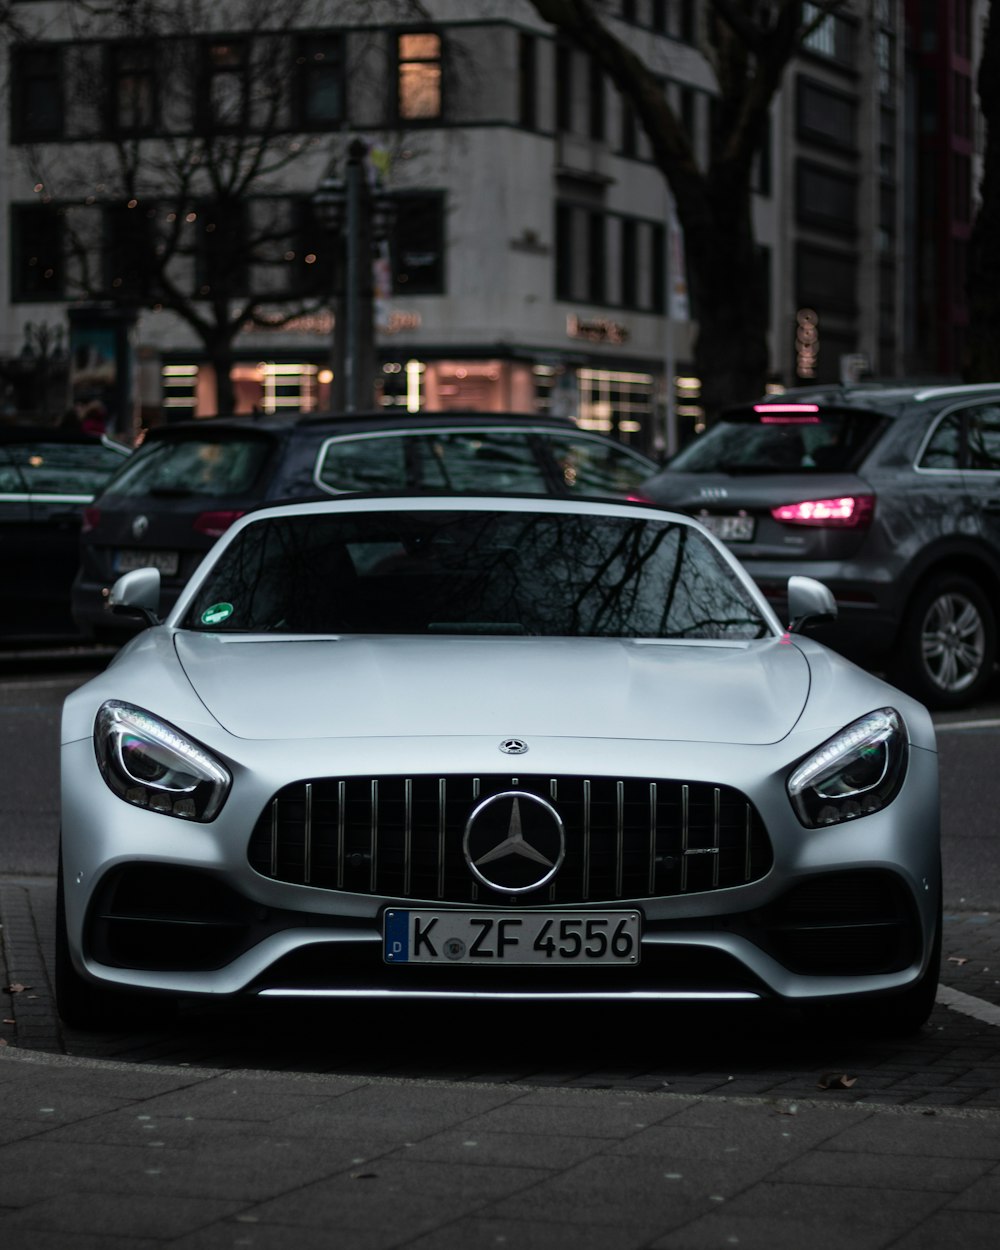 grauer Mercedes-Benz Pkw